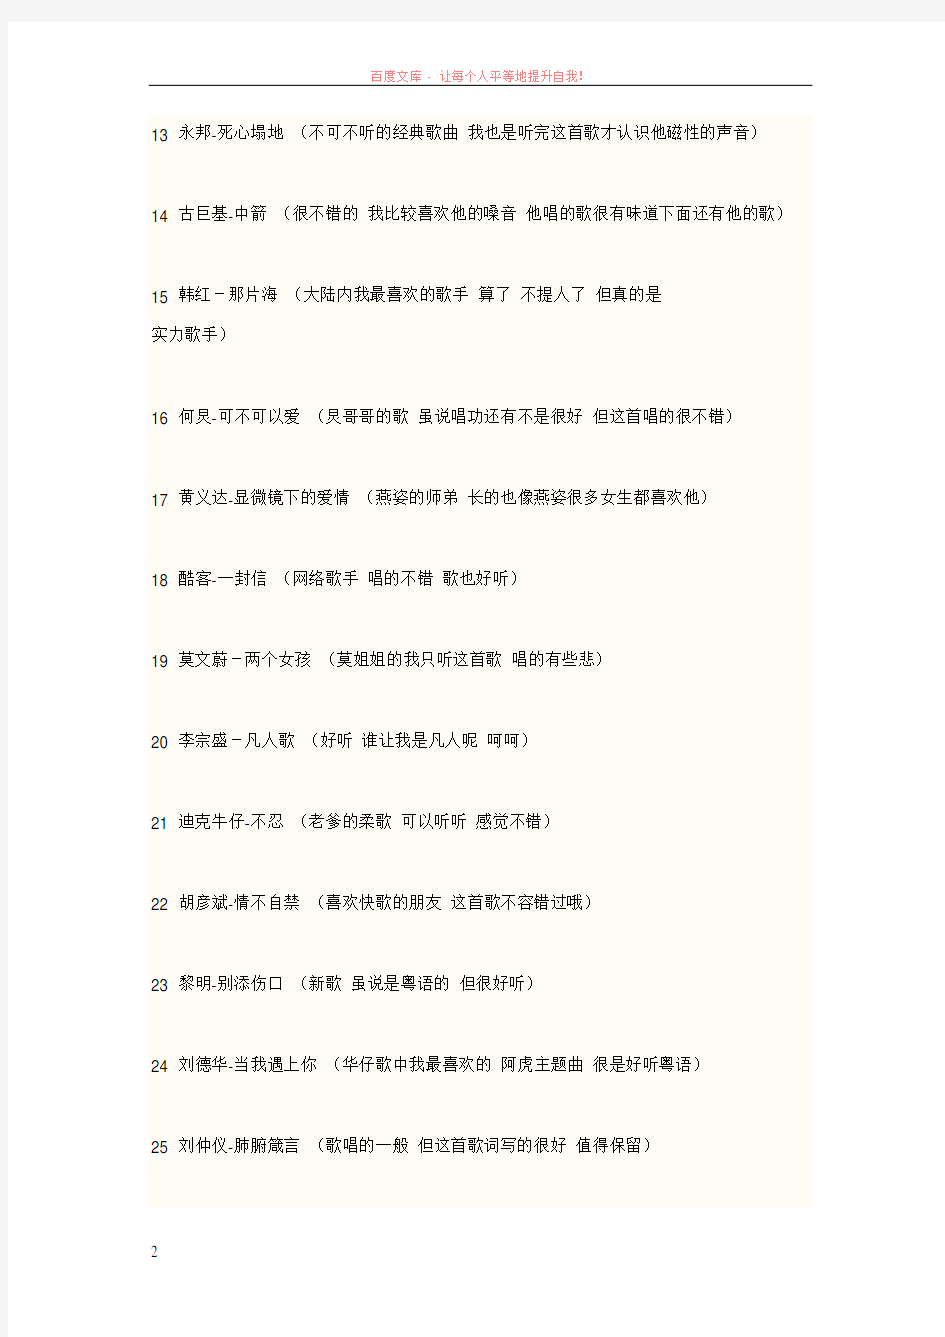 华语百首流行经典歌曲曲目大集合 (1)